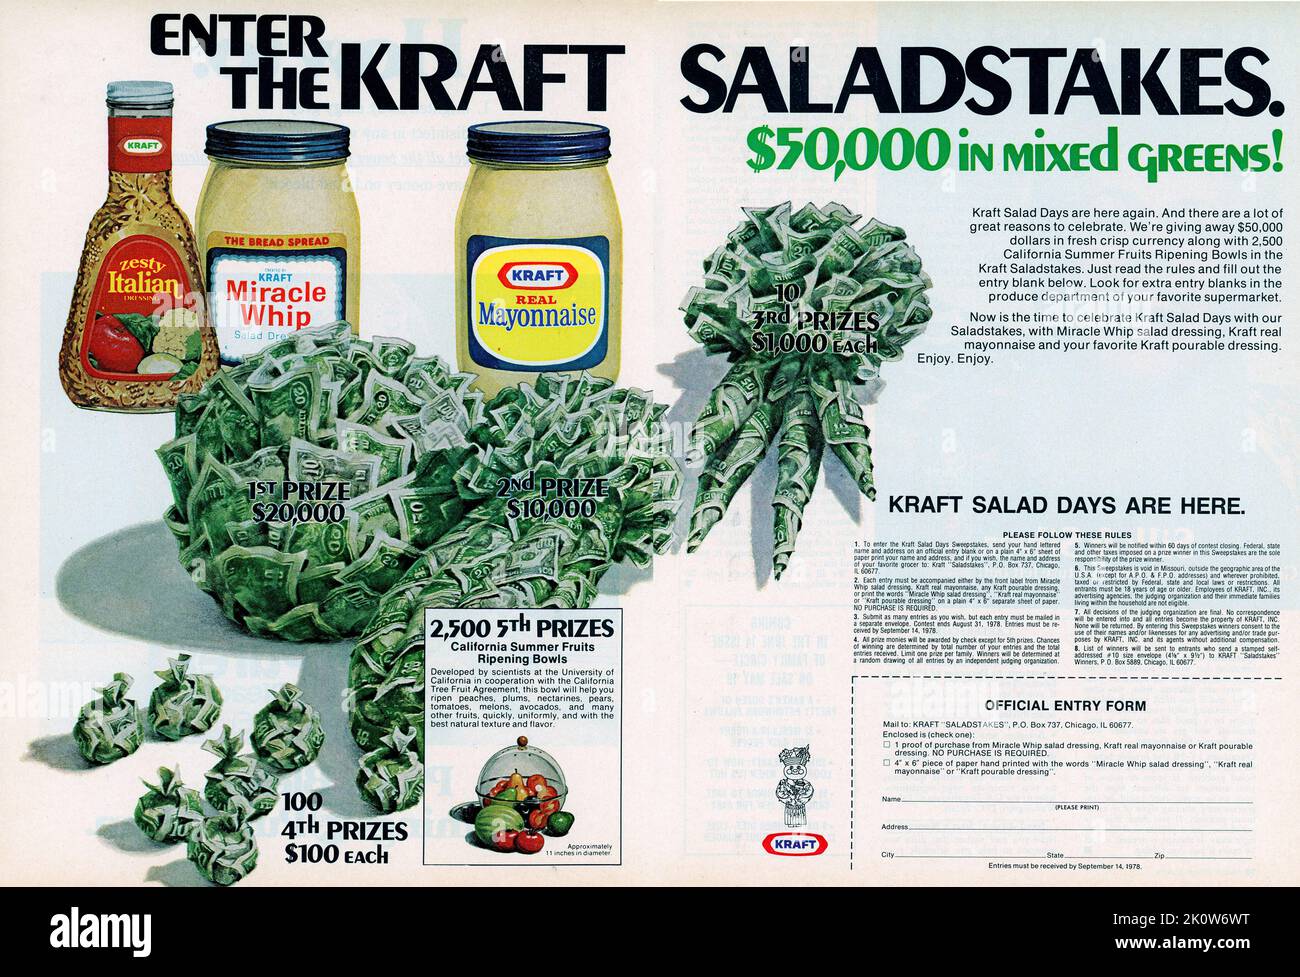 Vintage Kraft Miracle Whip Salad Dressing Jar With Lid & Label 48 oz. 1 1/2  qt.